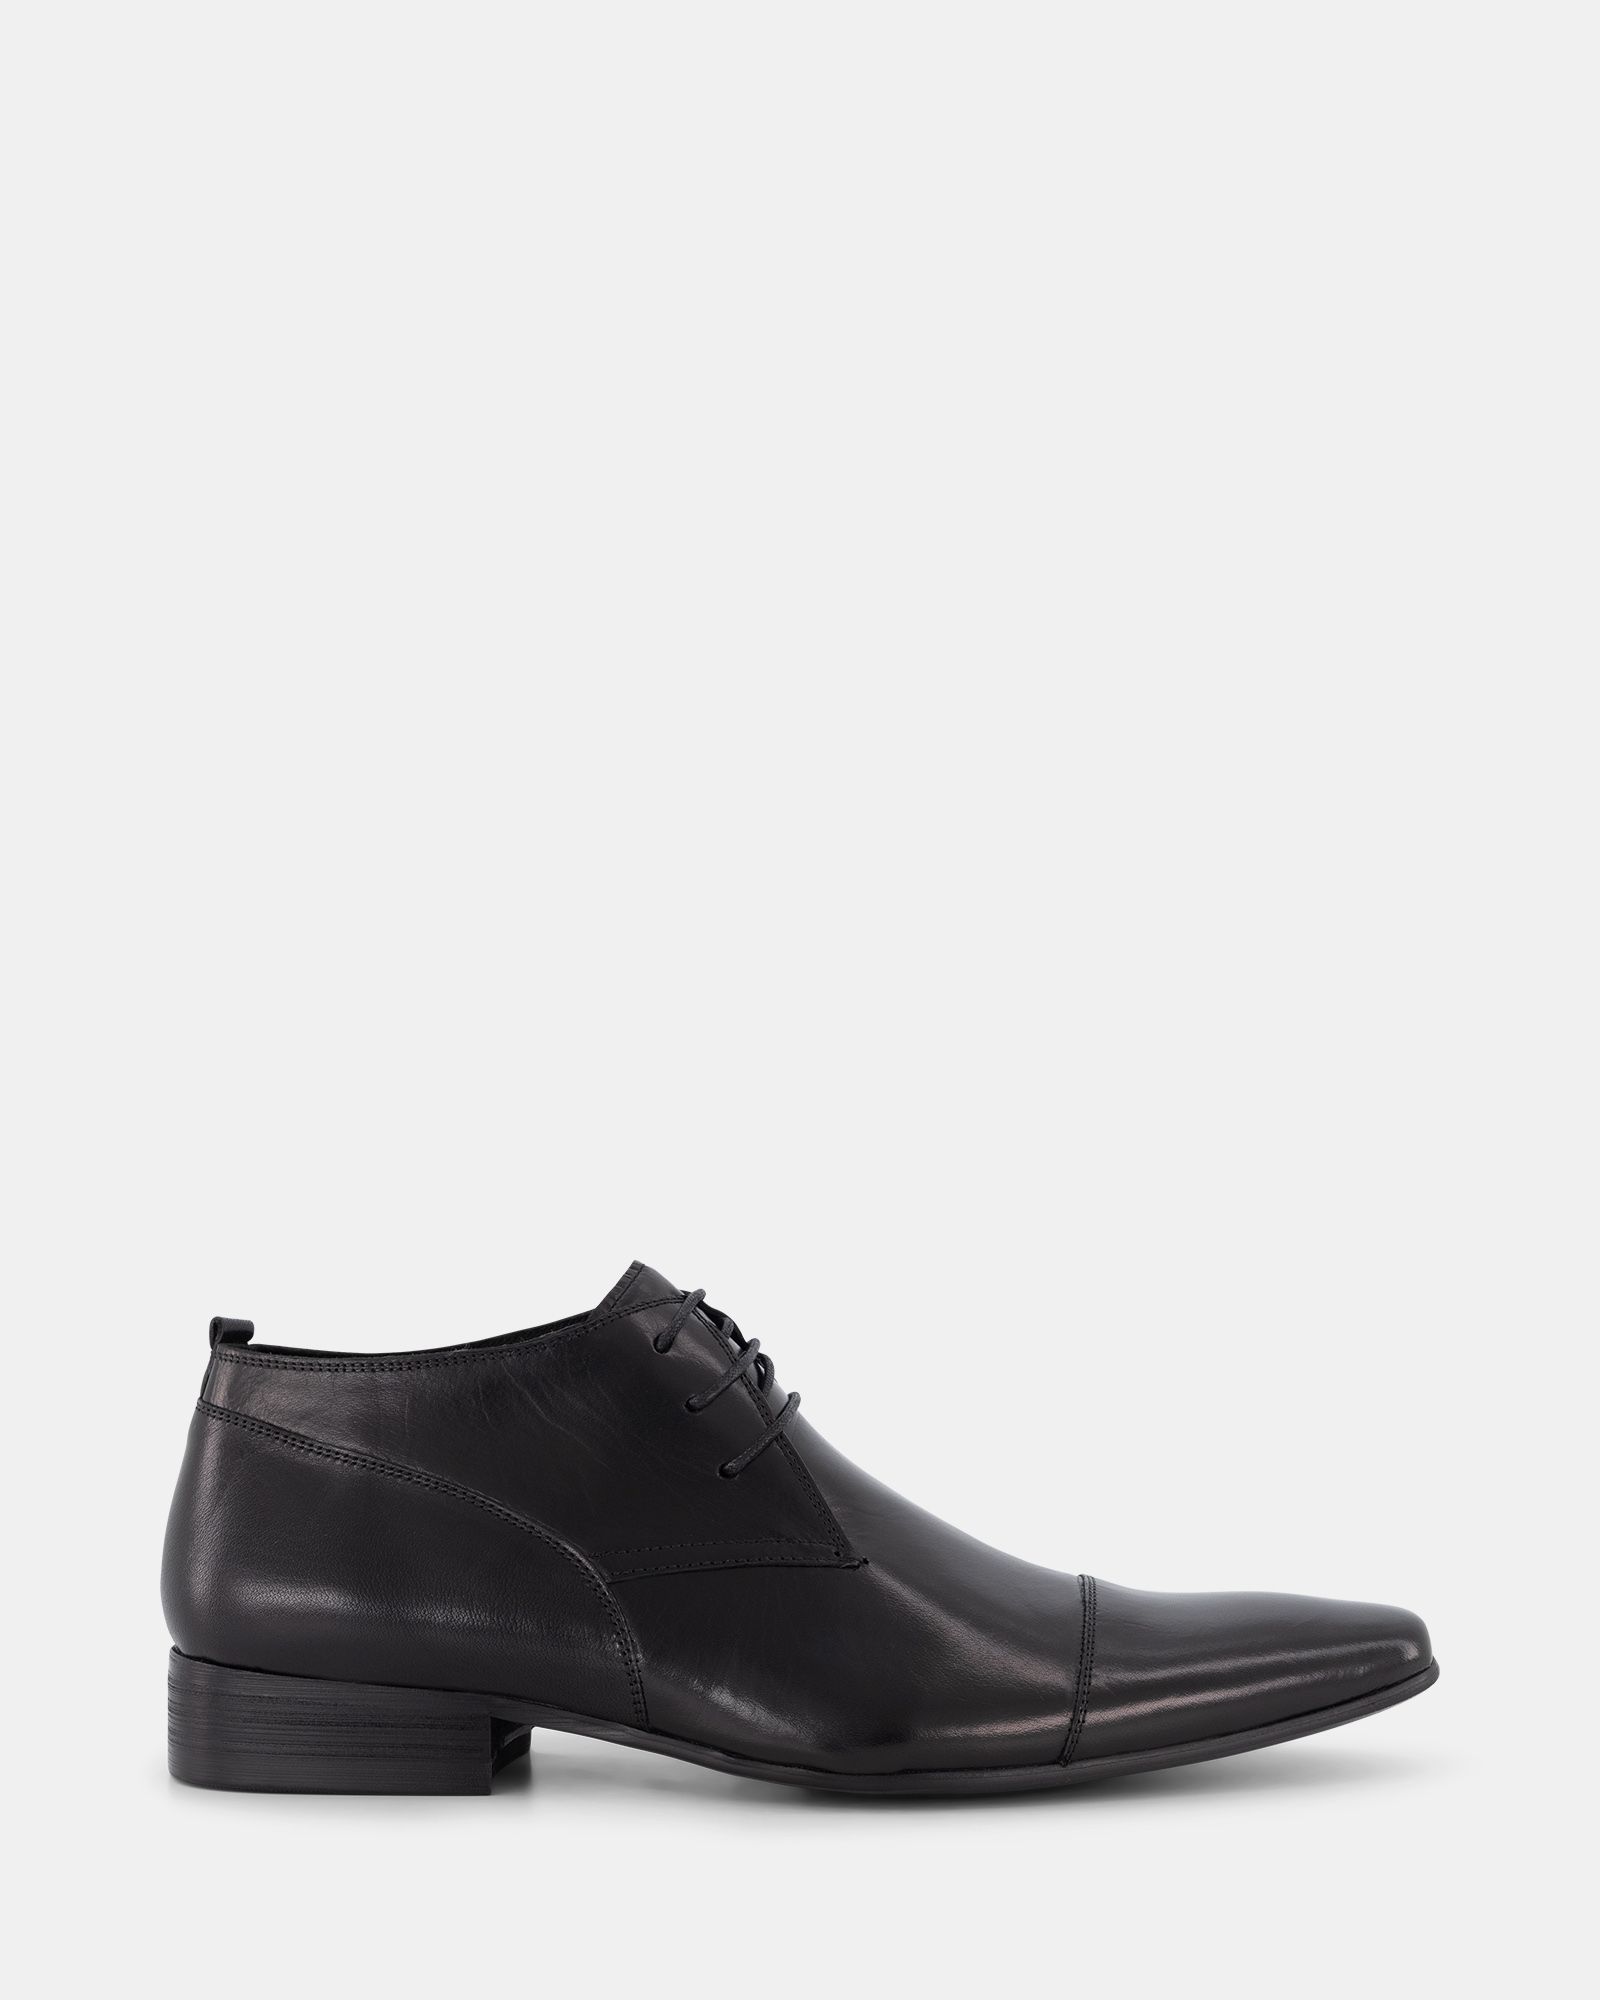 Peter James Saville Row Dress - Black | Shoe Connection AU